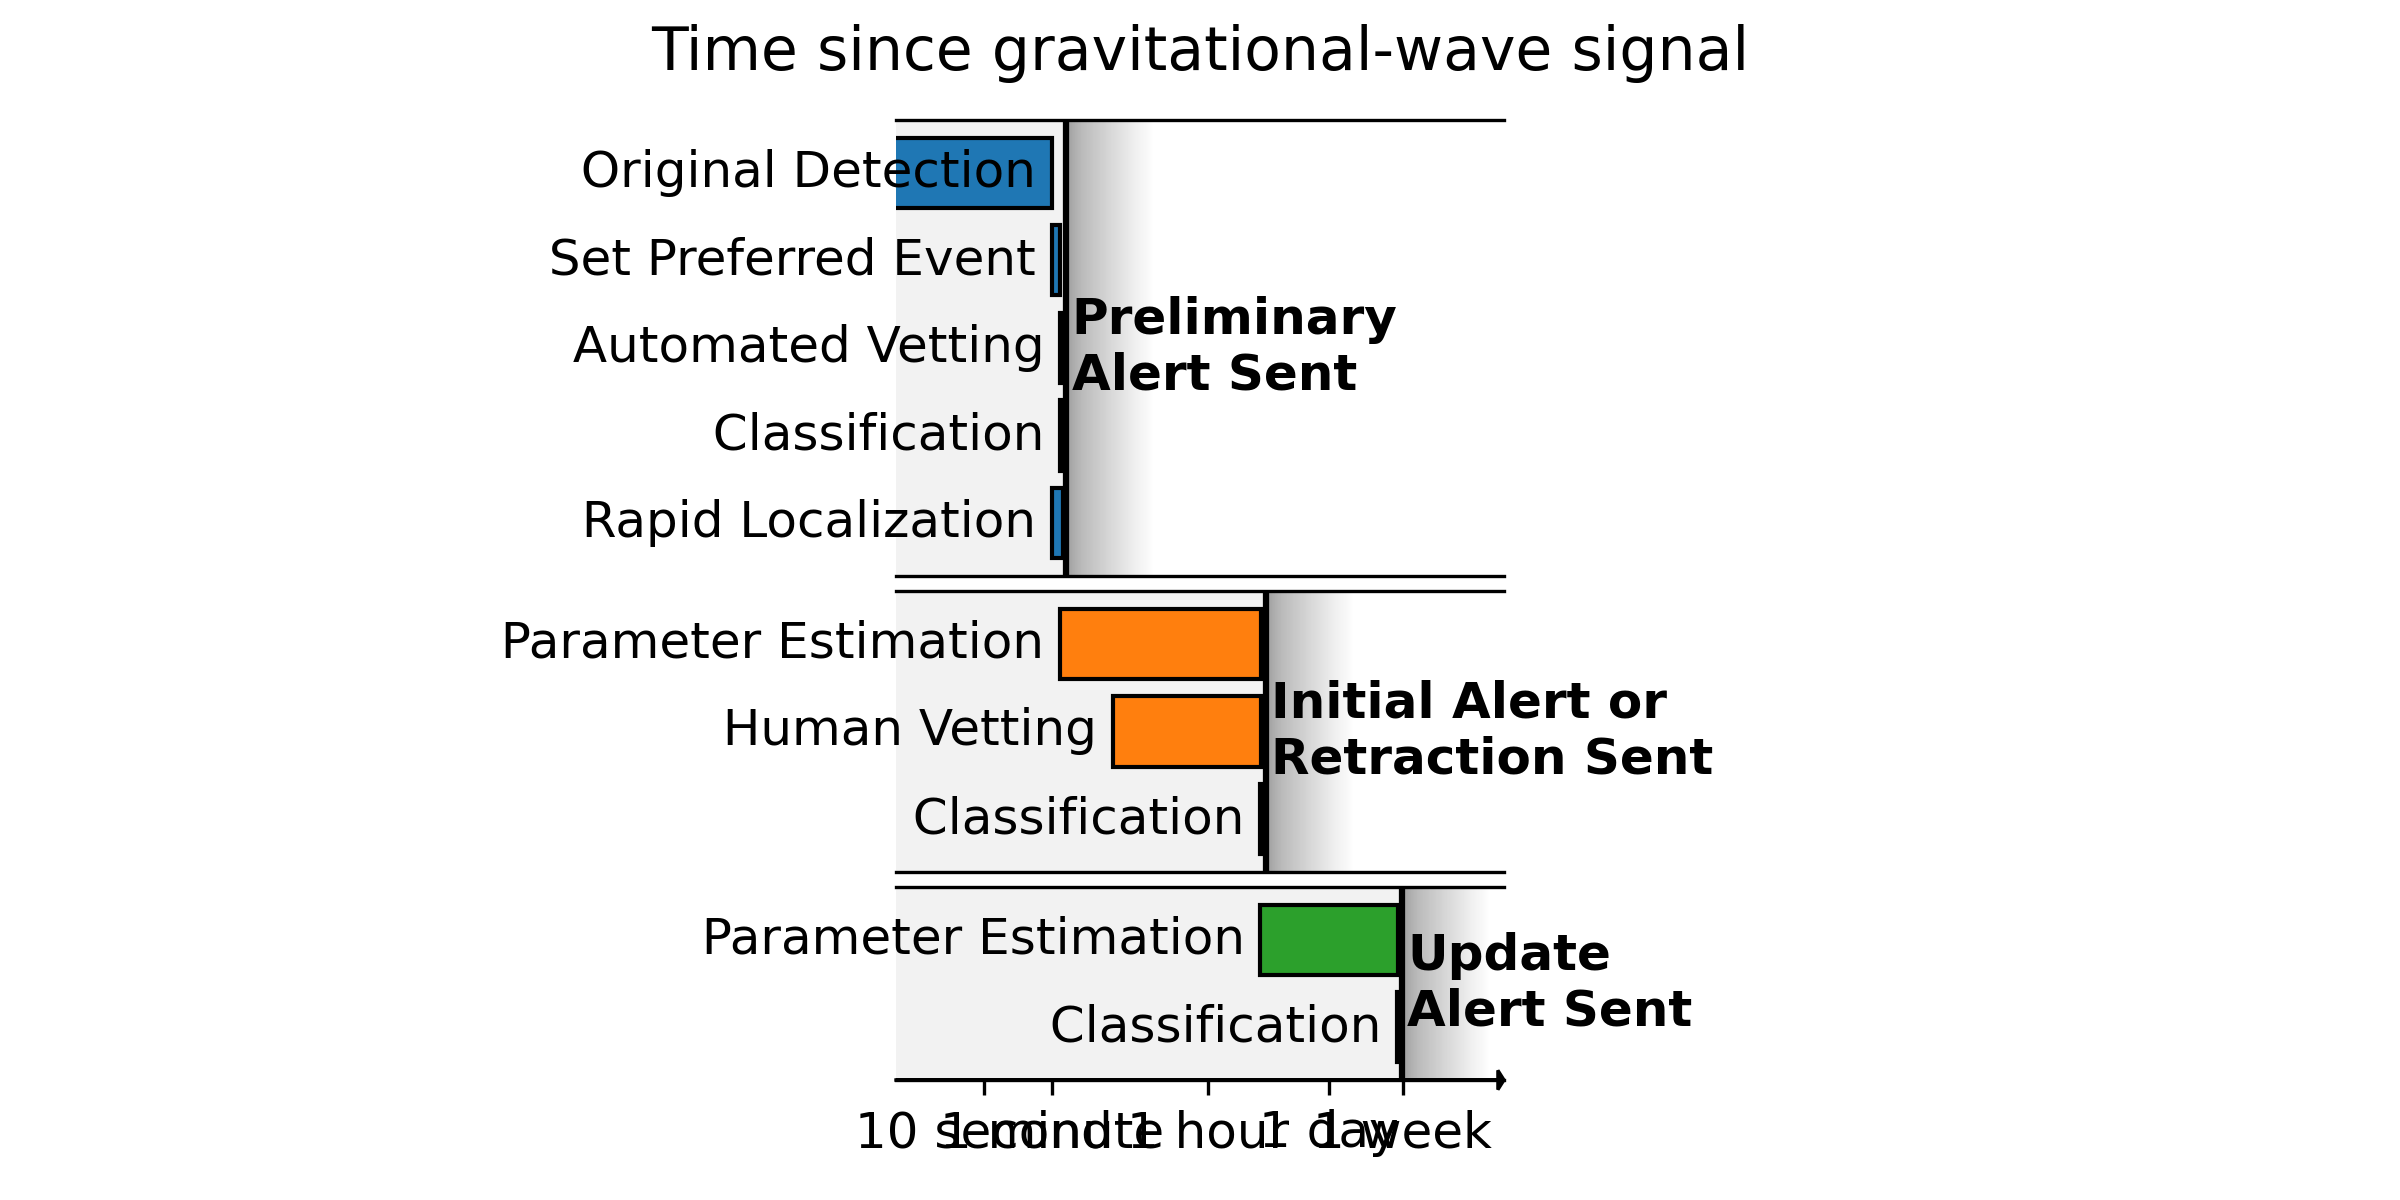 Timeline for sending gravitational-wave alerts